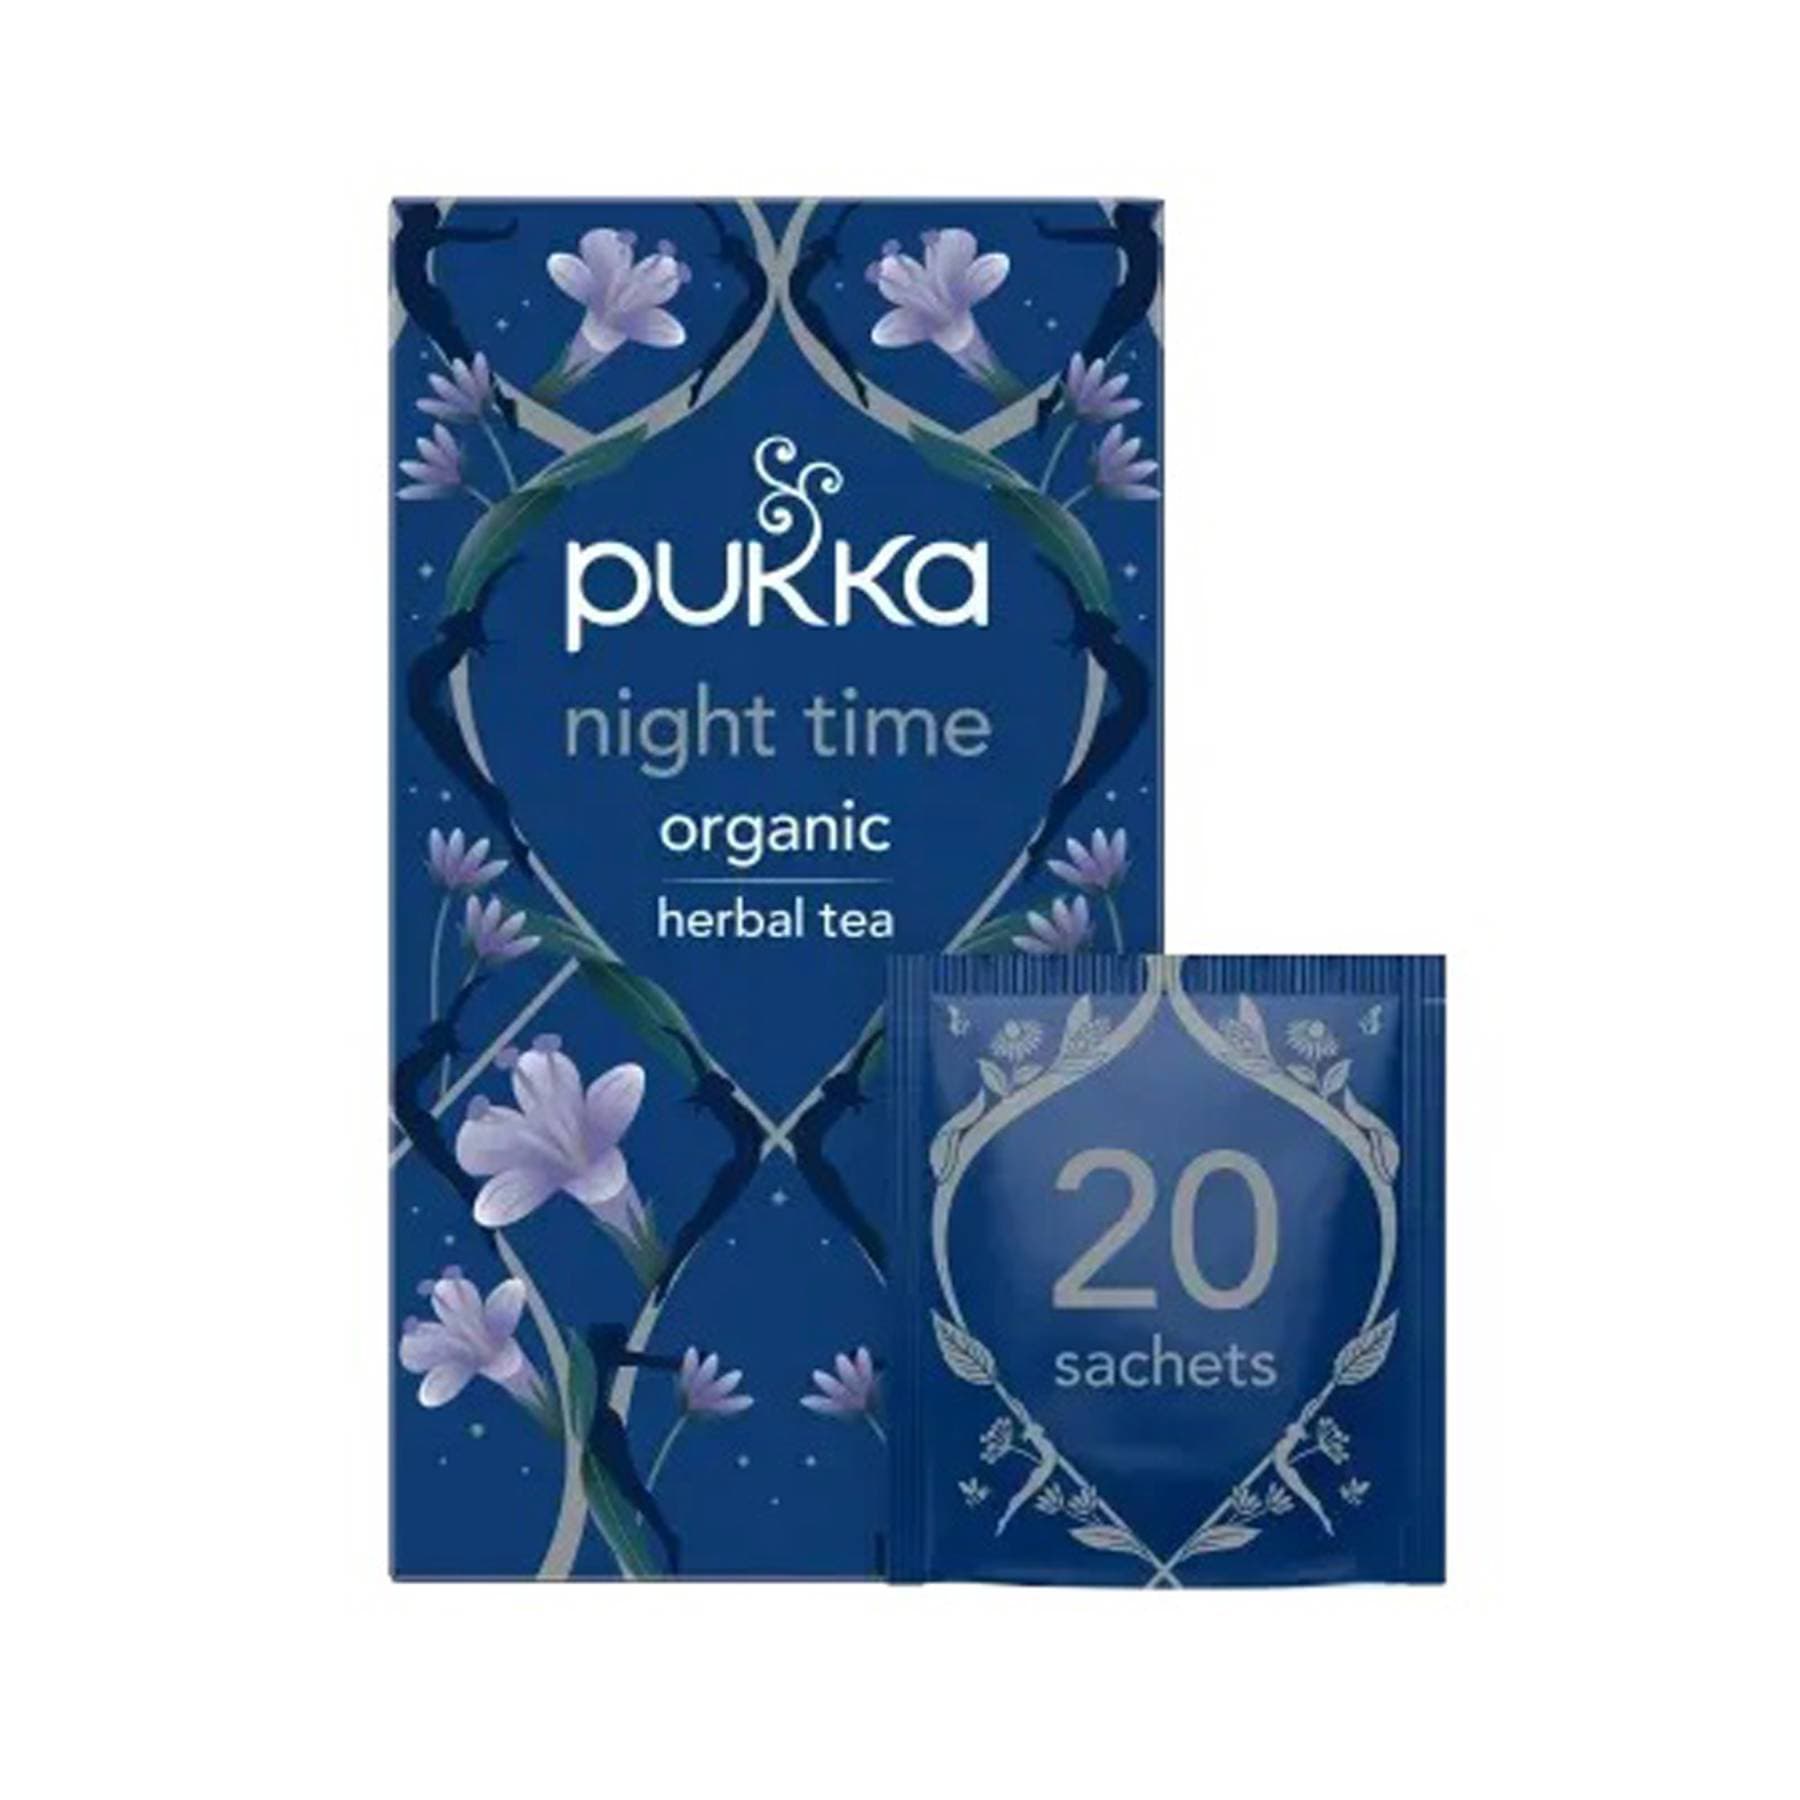 Pukka night time 20 tea bags